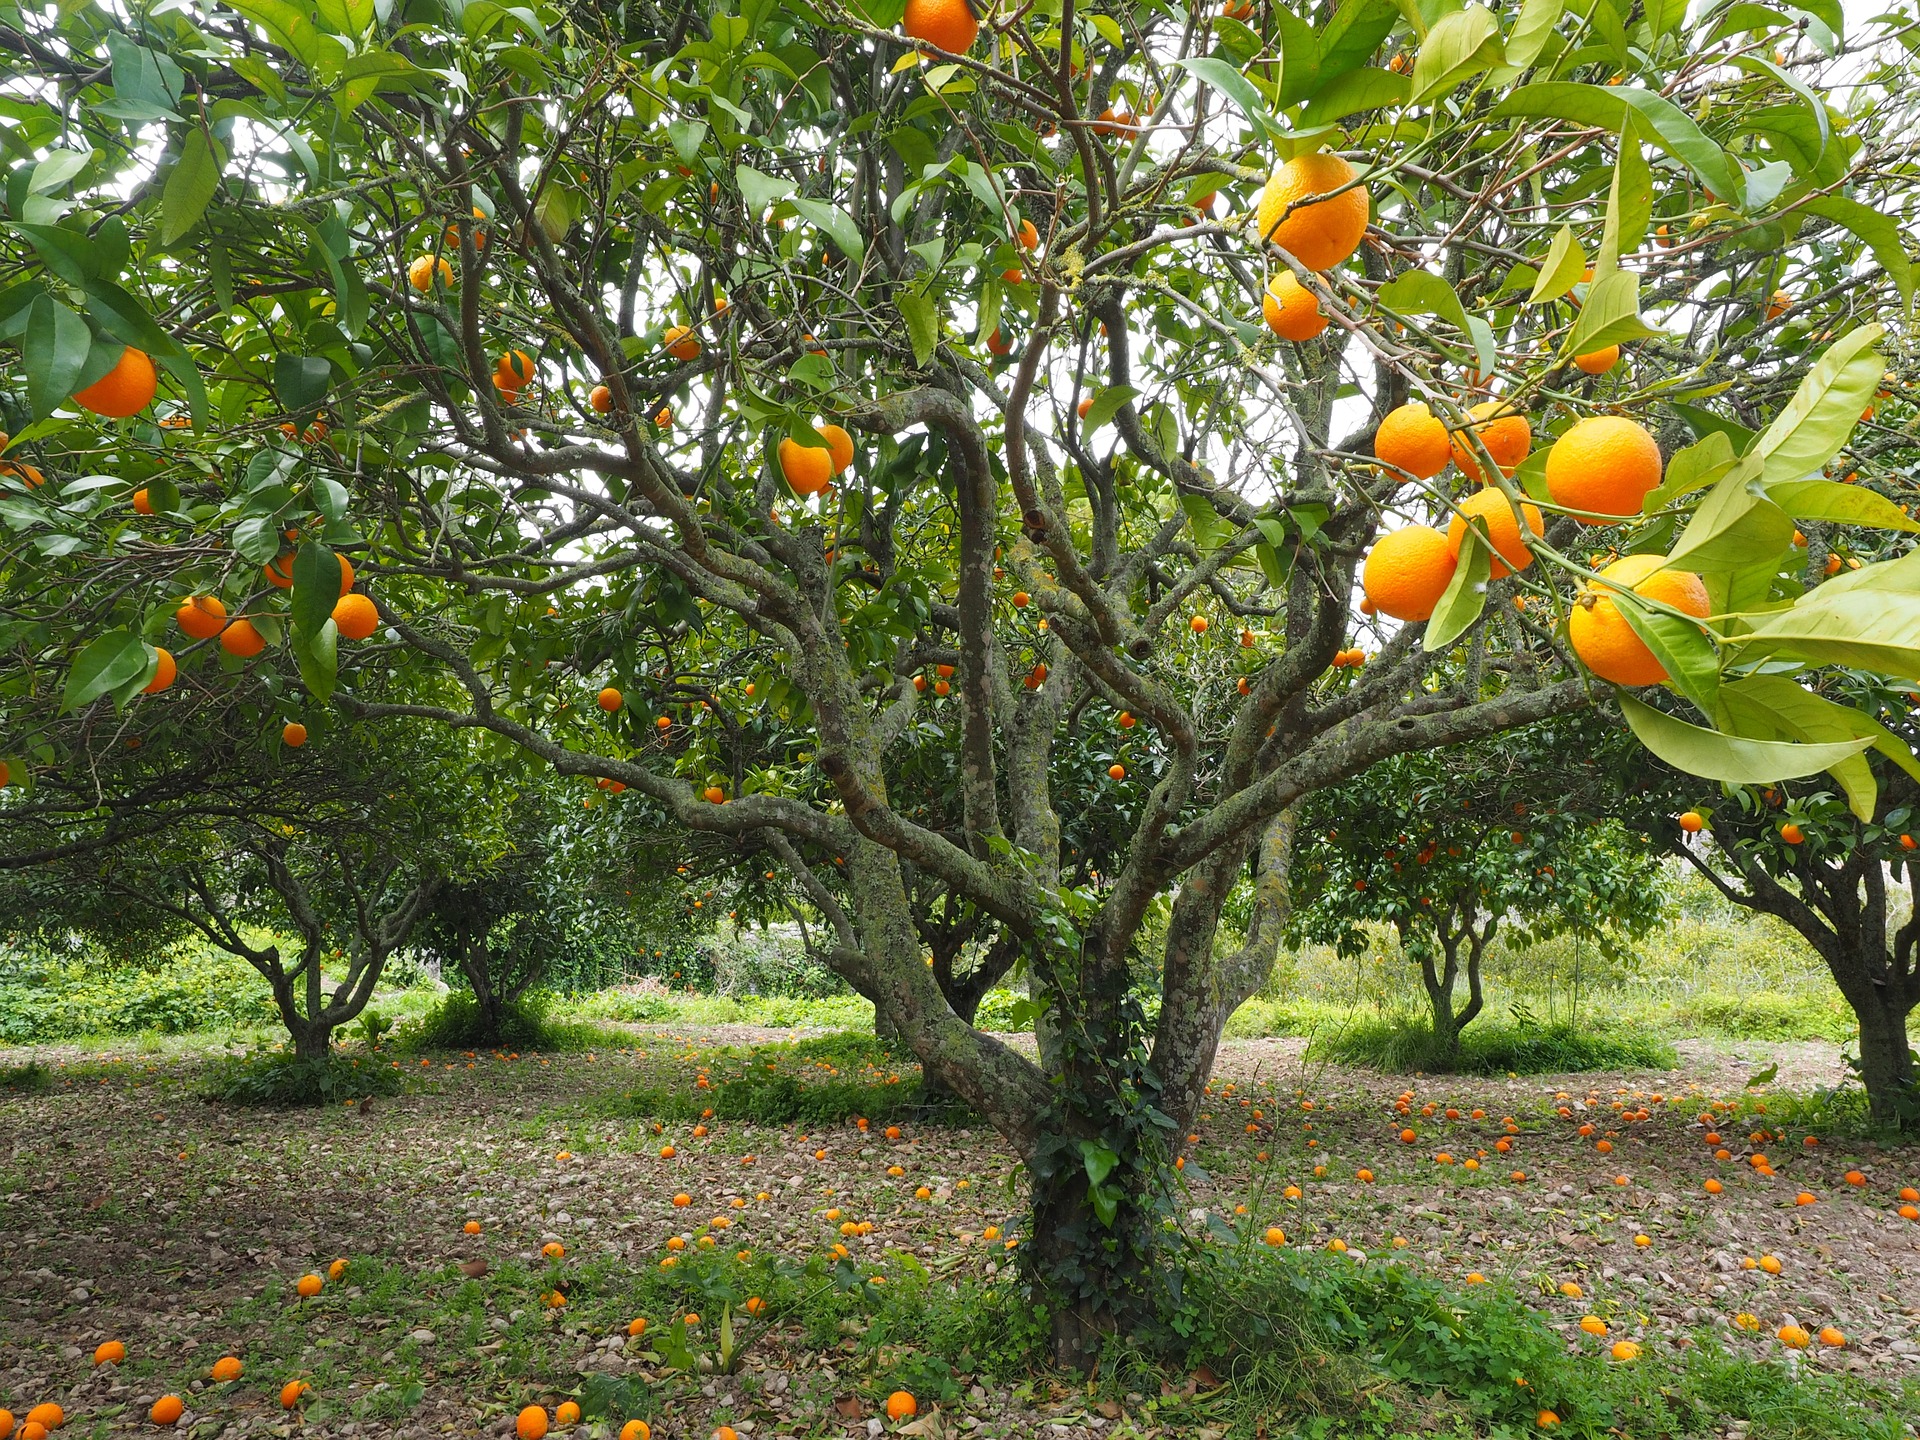 Macintosh HD:Users:brittanyloeffler:Downloads:Farmer Spider Relic:03-orange-trees.jpg